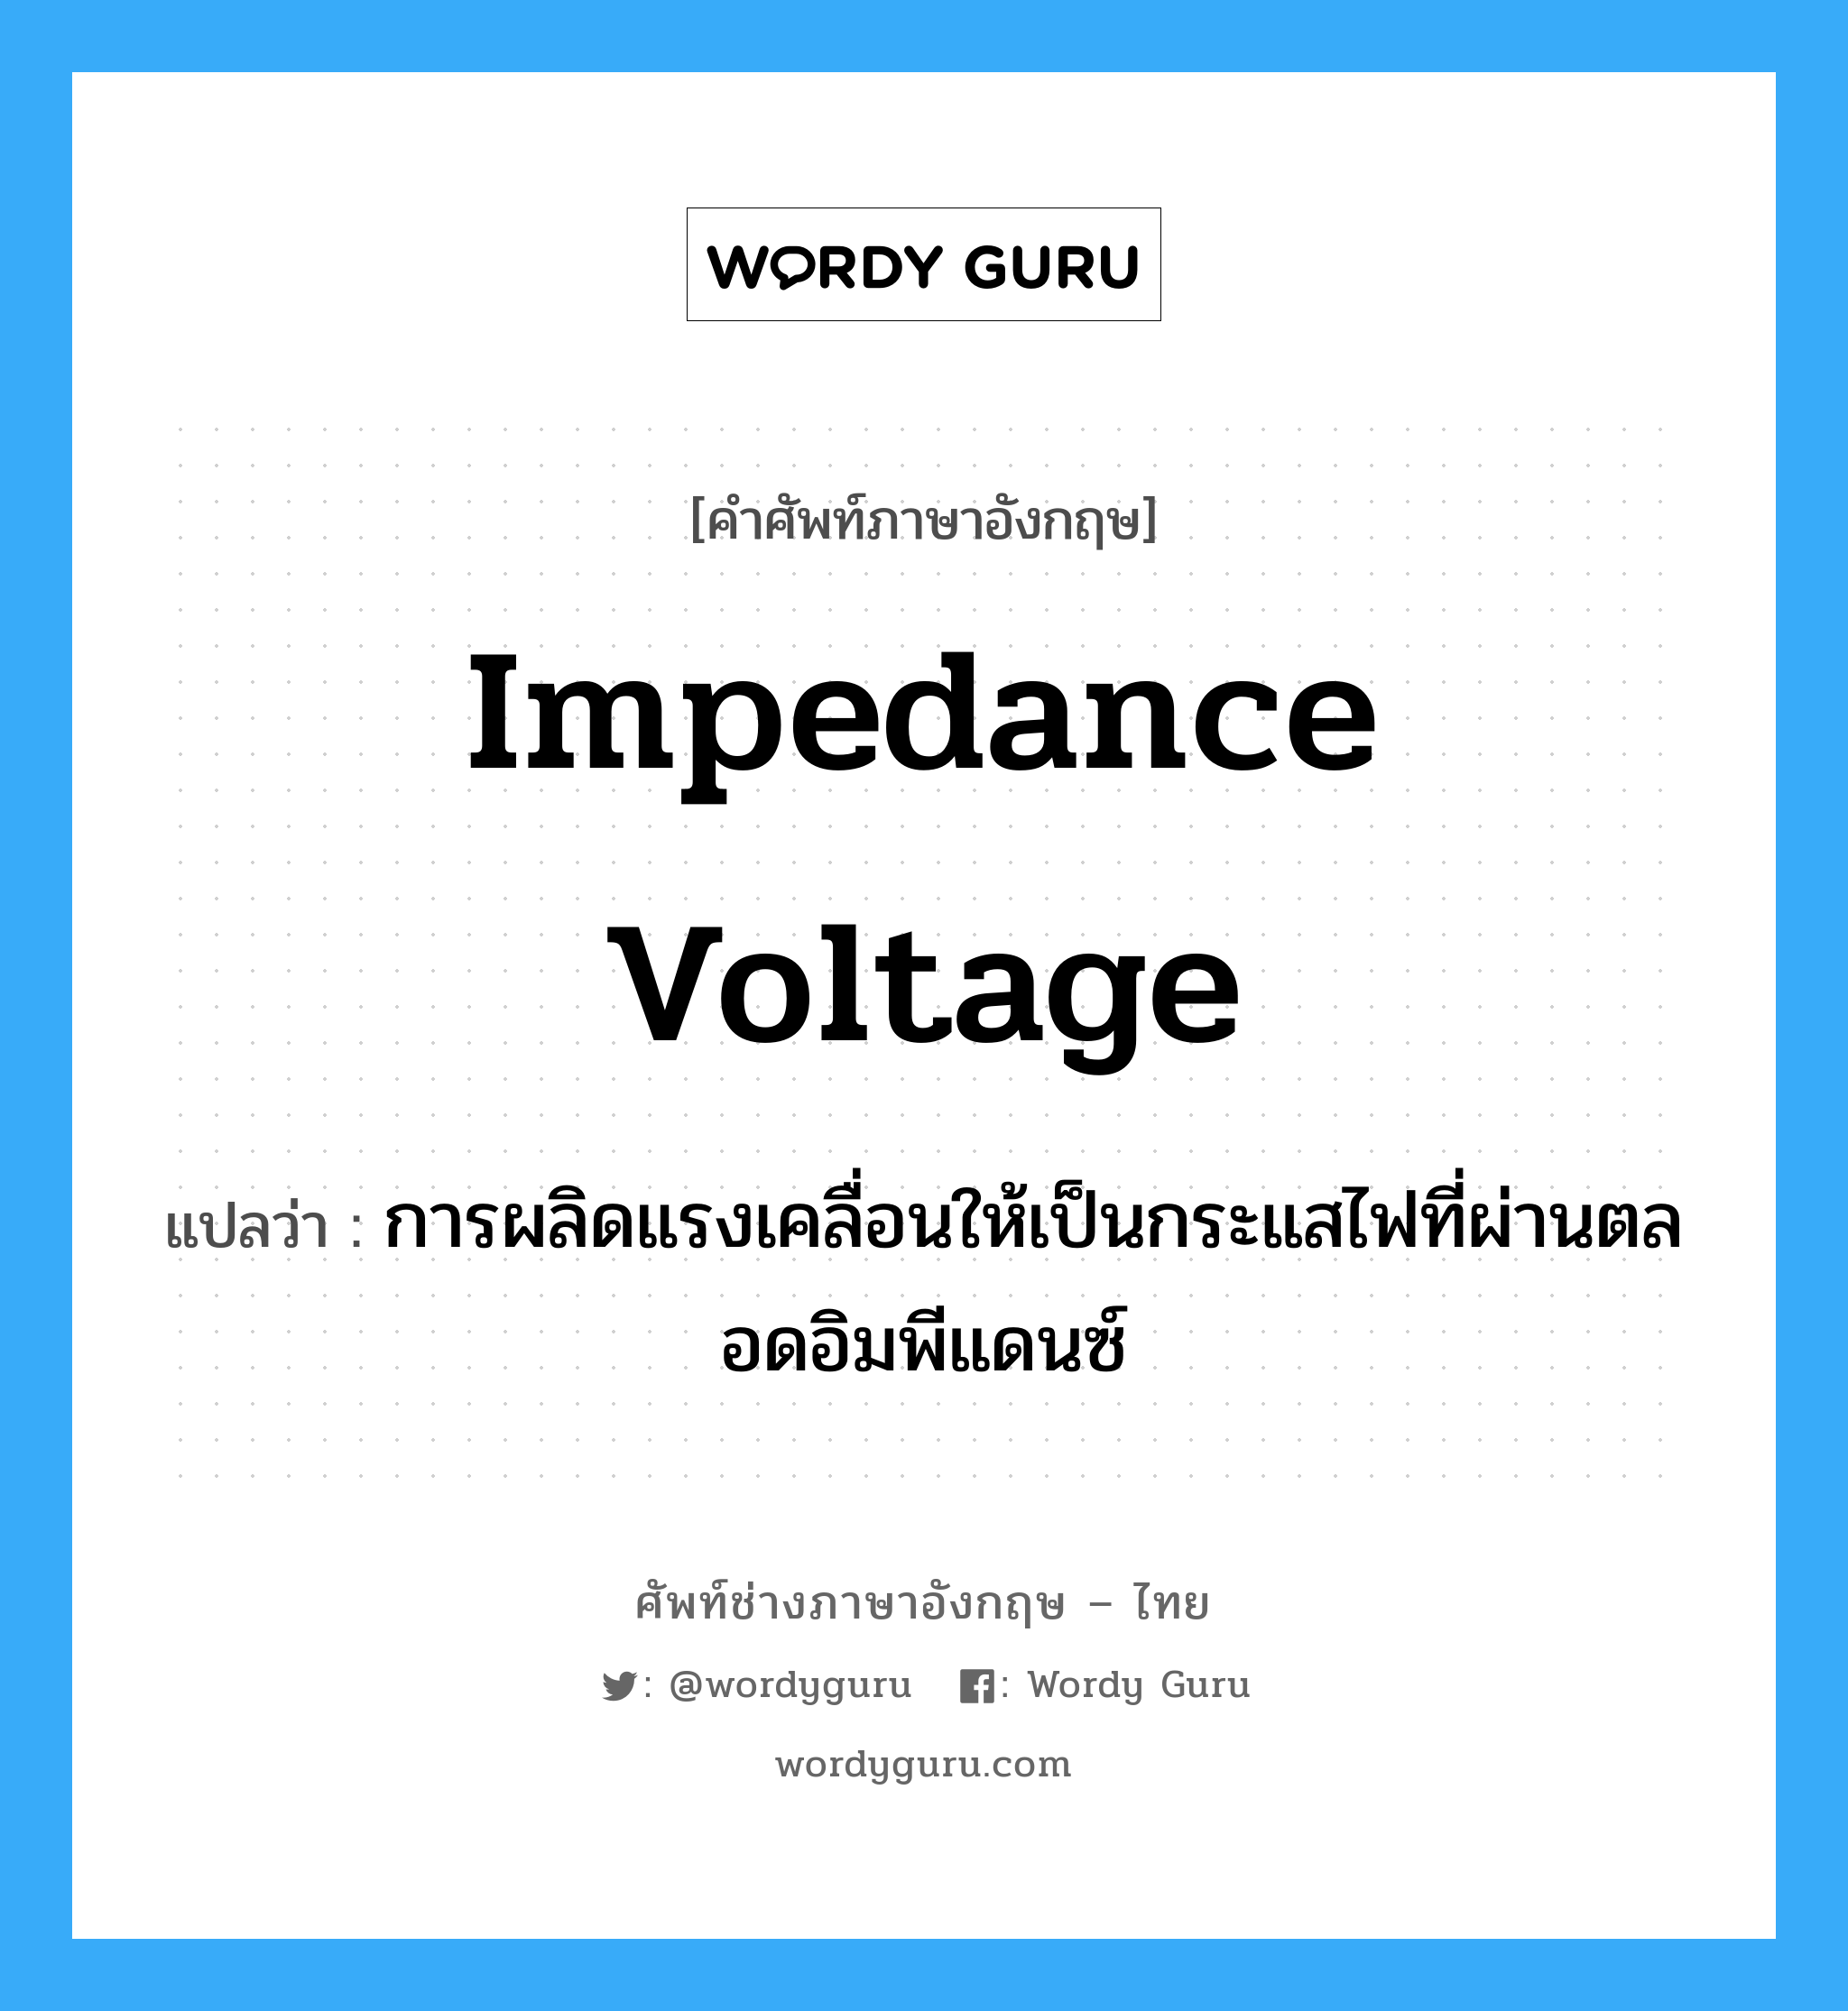 impedance voltage แปลว่า?, คำศัพท์ช่างภาษาอังกฤษ - ไทย impedance voltage คำศัพท์ภาษาอังกฤษ impedance voltage แปลว่า การผลิดแรงเคลื่อนให้เป็นกระแสไฟที่ผ่านตลอดอิมพีแดนซ์